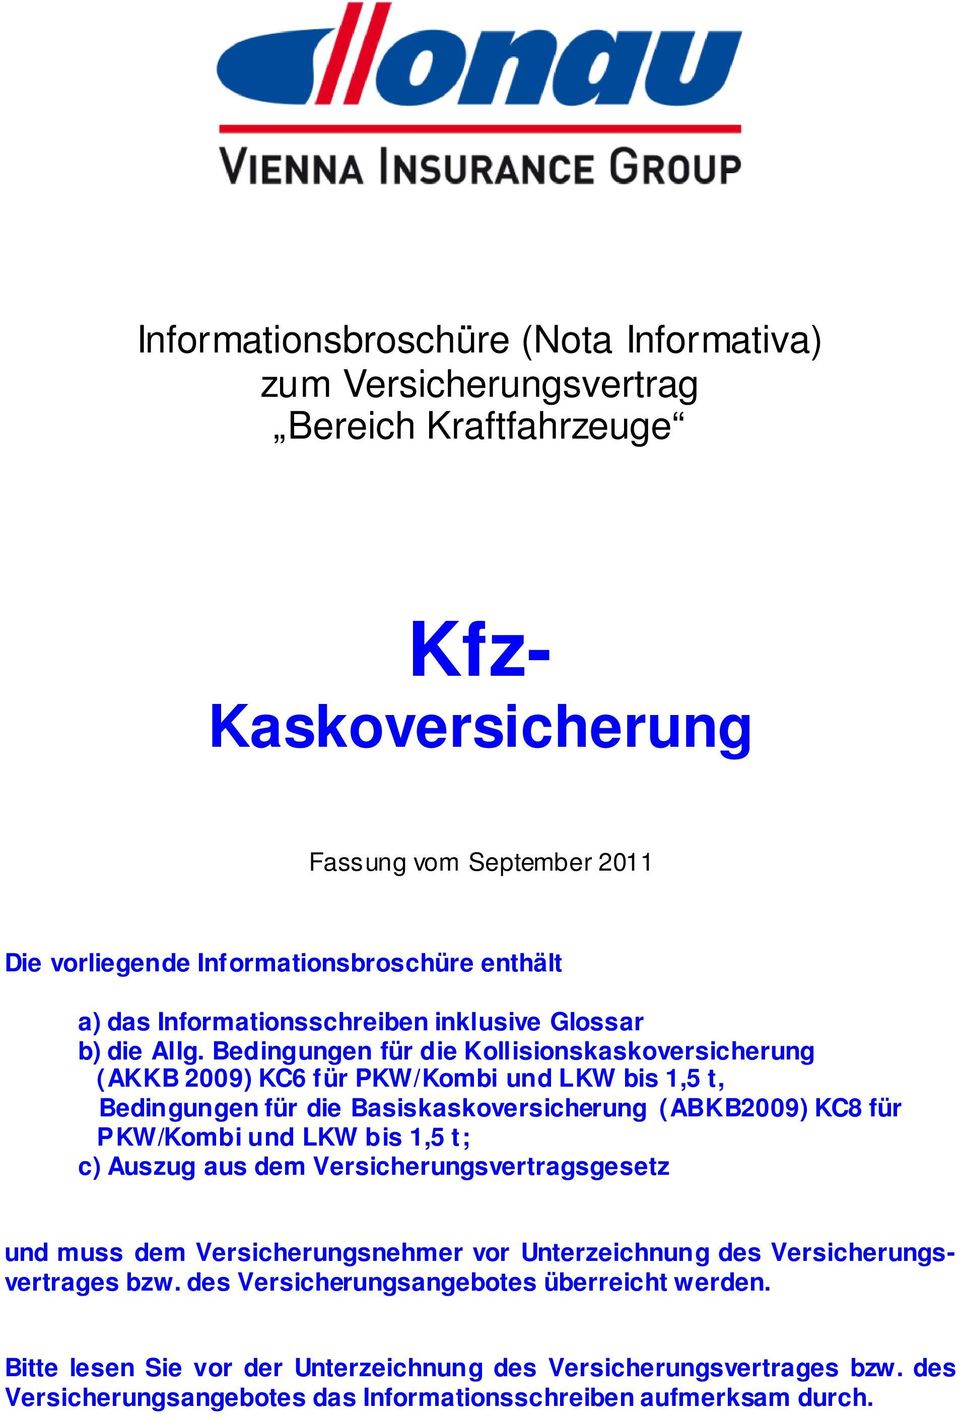 Bedingungen für die Kollisionskaskoversicherung (AKKB 2009) KC6 für PKW/Kombi und LKW bis 1,5 t, Bedingungen für die Basiskaskoversicherung (ABKB2009) KC8 für PKW/Kombi und LKW bis 1,5 t;